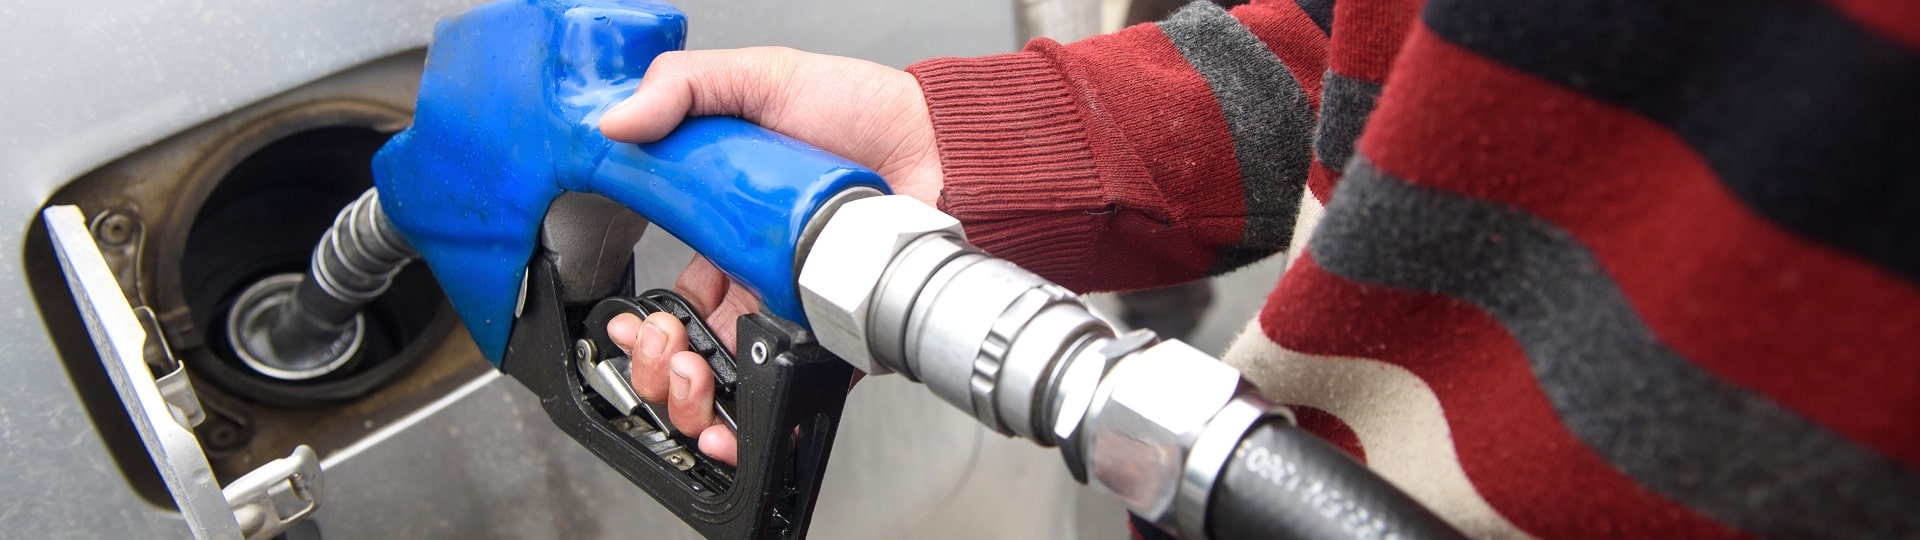 Propad cen benzínu a nafty nebere konce